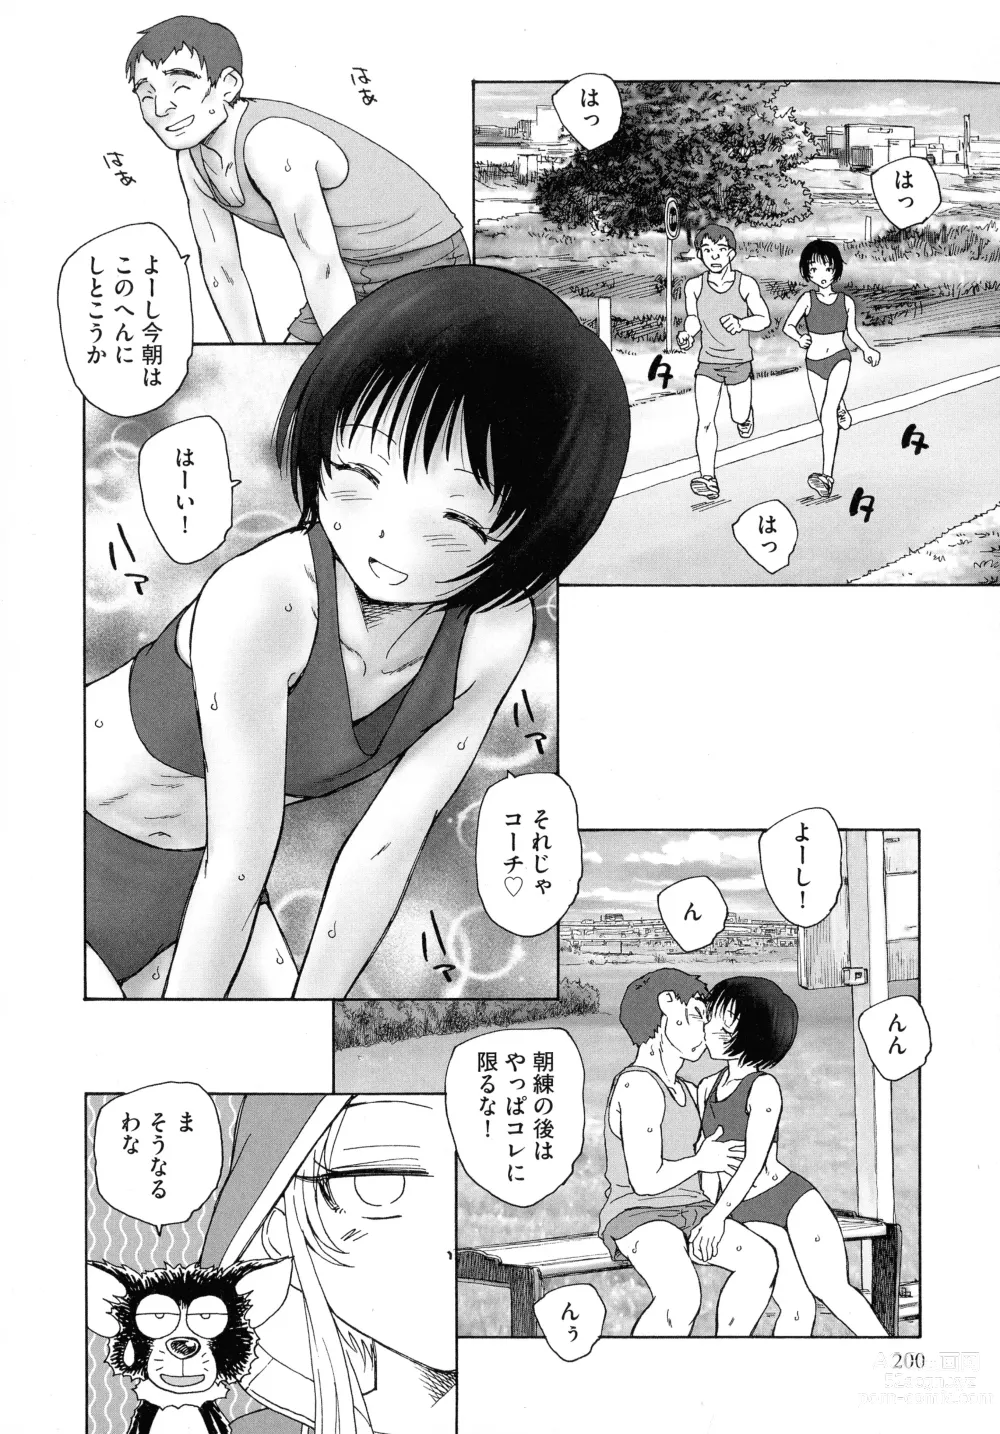 Page 198 of manga Mayoi no Machi no Akazukin Jo